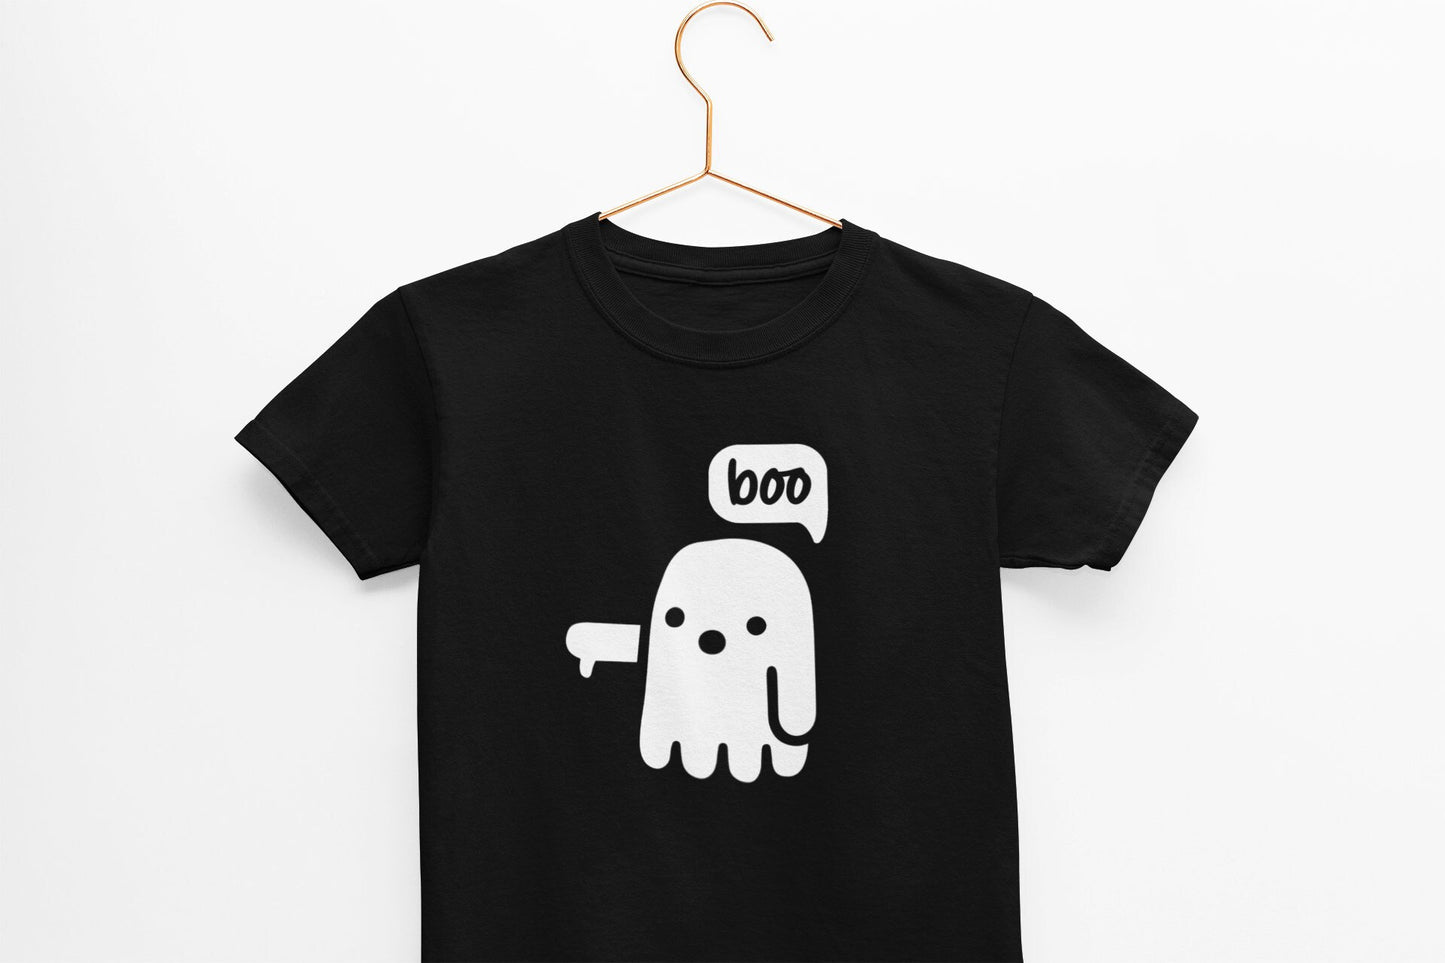 Unisex Kids Boo Halloween T-Shirt, Children's Ghost Halloween Shirt, Toddler T-Shirt, Boys Shirt, Girls Shirt, Autumn, Fall, Fancy Dress